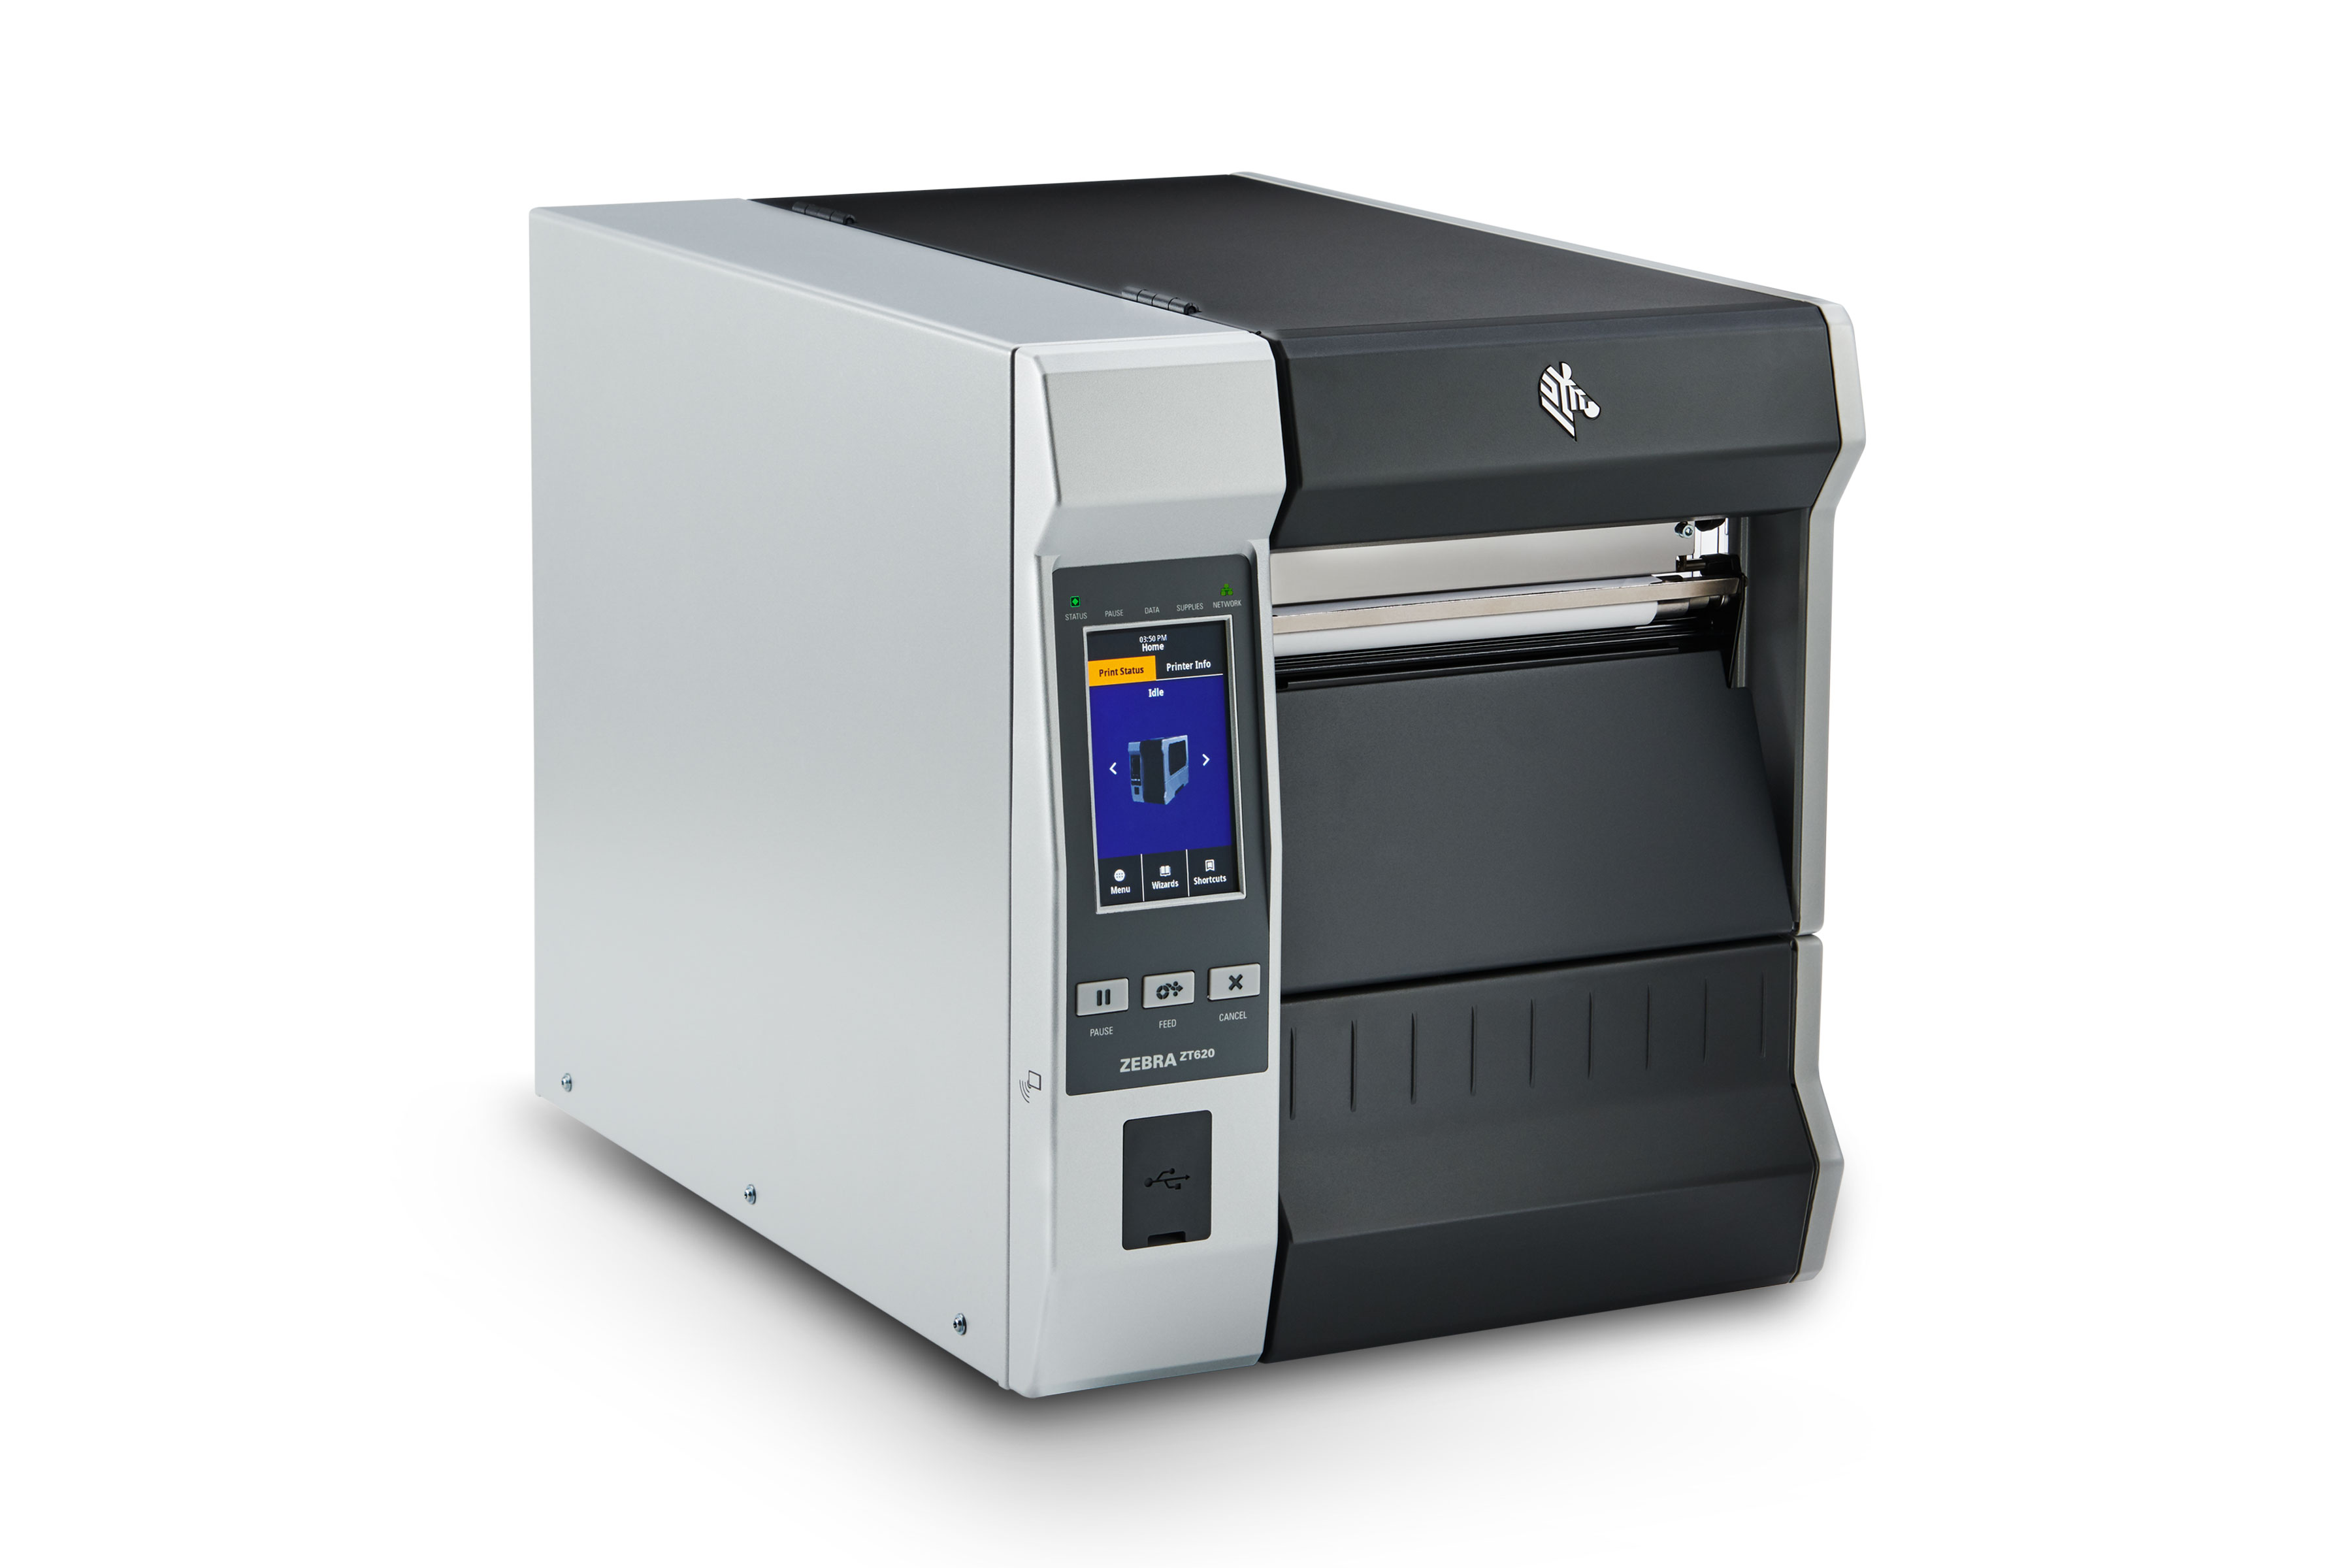 Zt600 Series Industrial Printers Zebra 9080